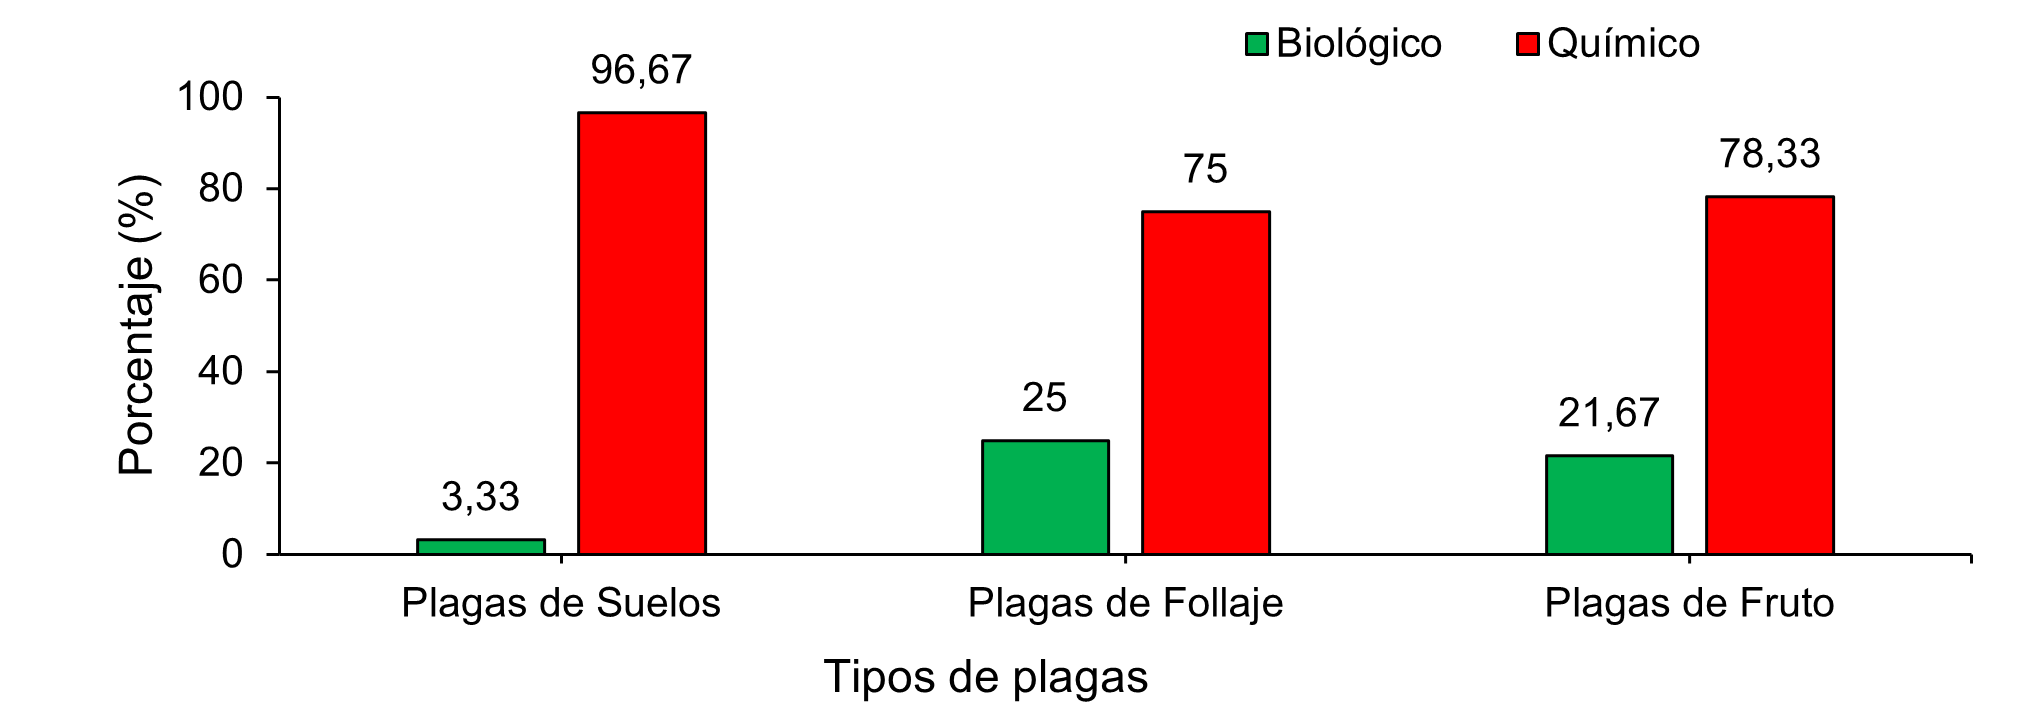 Tipos de tratamientos empleados en el manejo de plagas insectiles en el cultivo de repollo en cuatro cooperativas rurales en Jinotega, Nicaragua